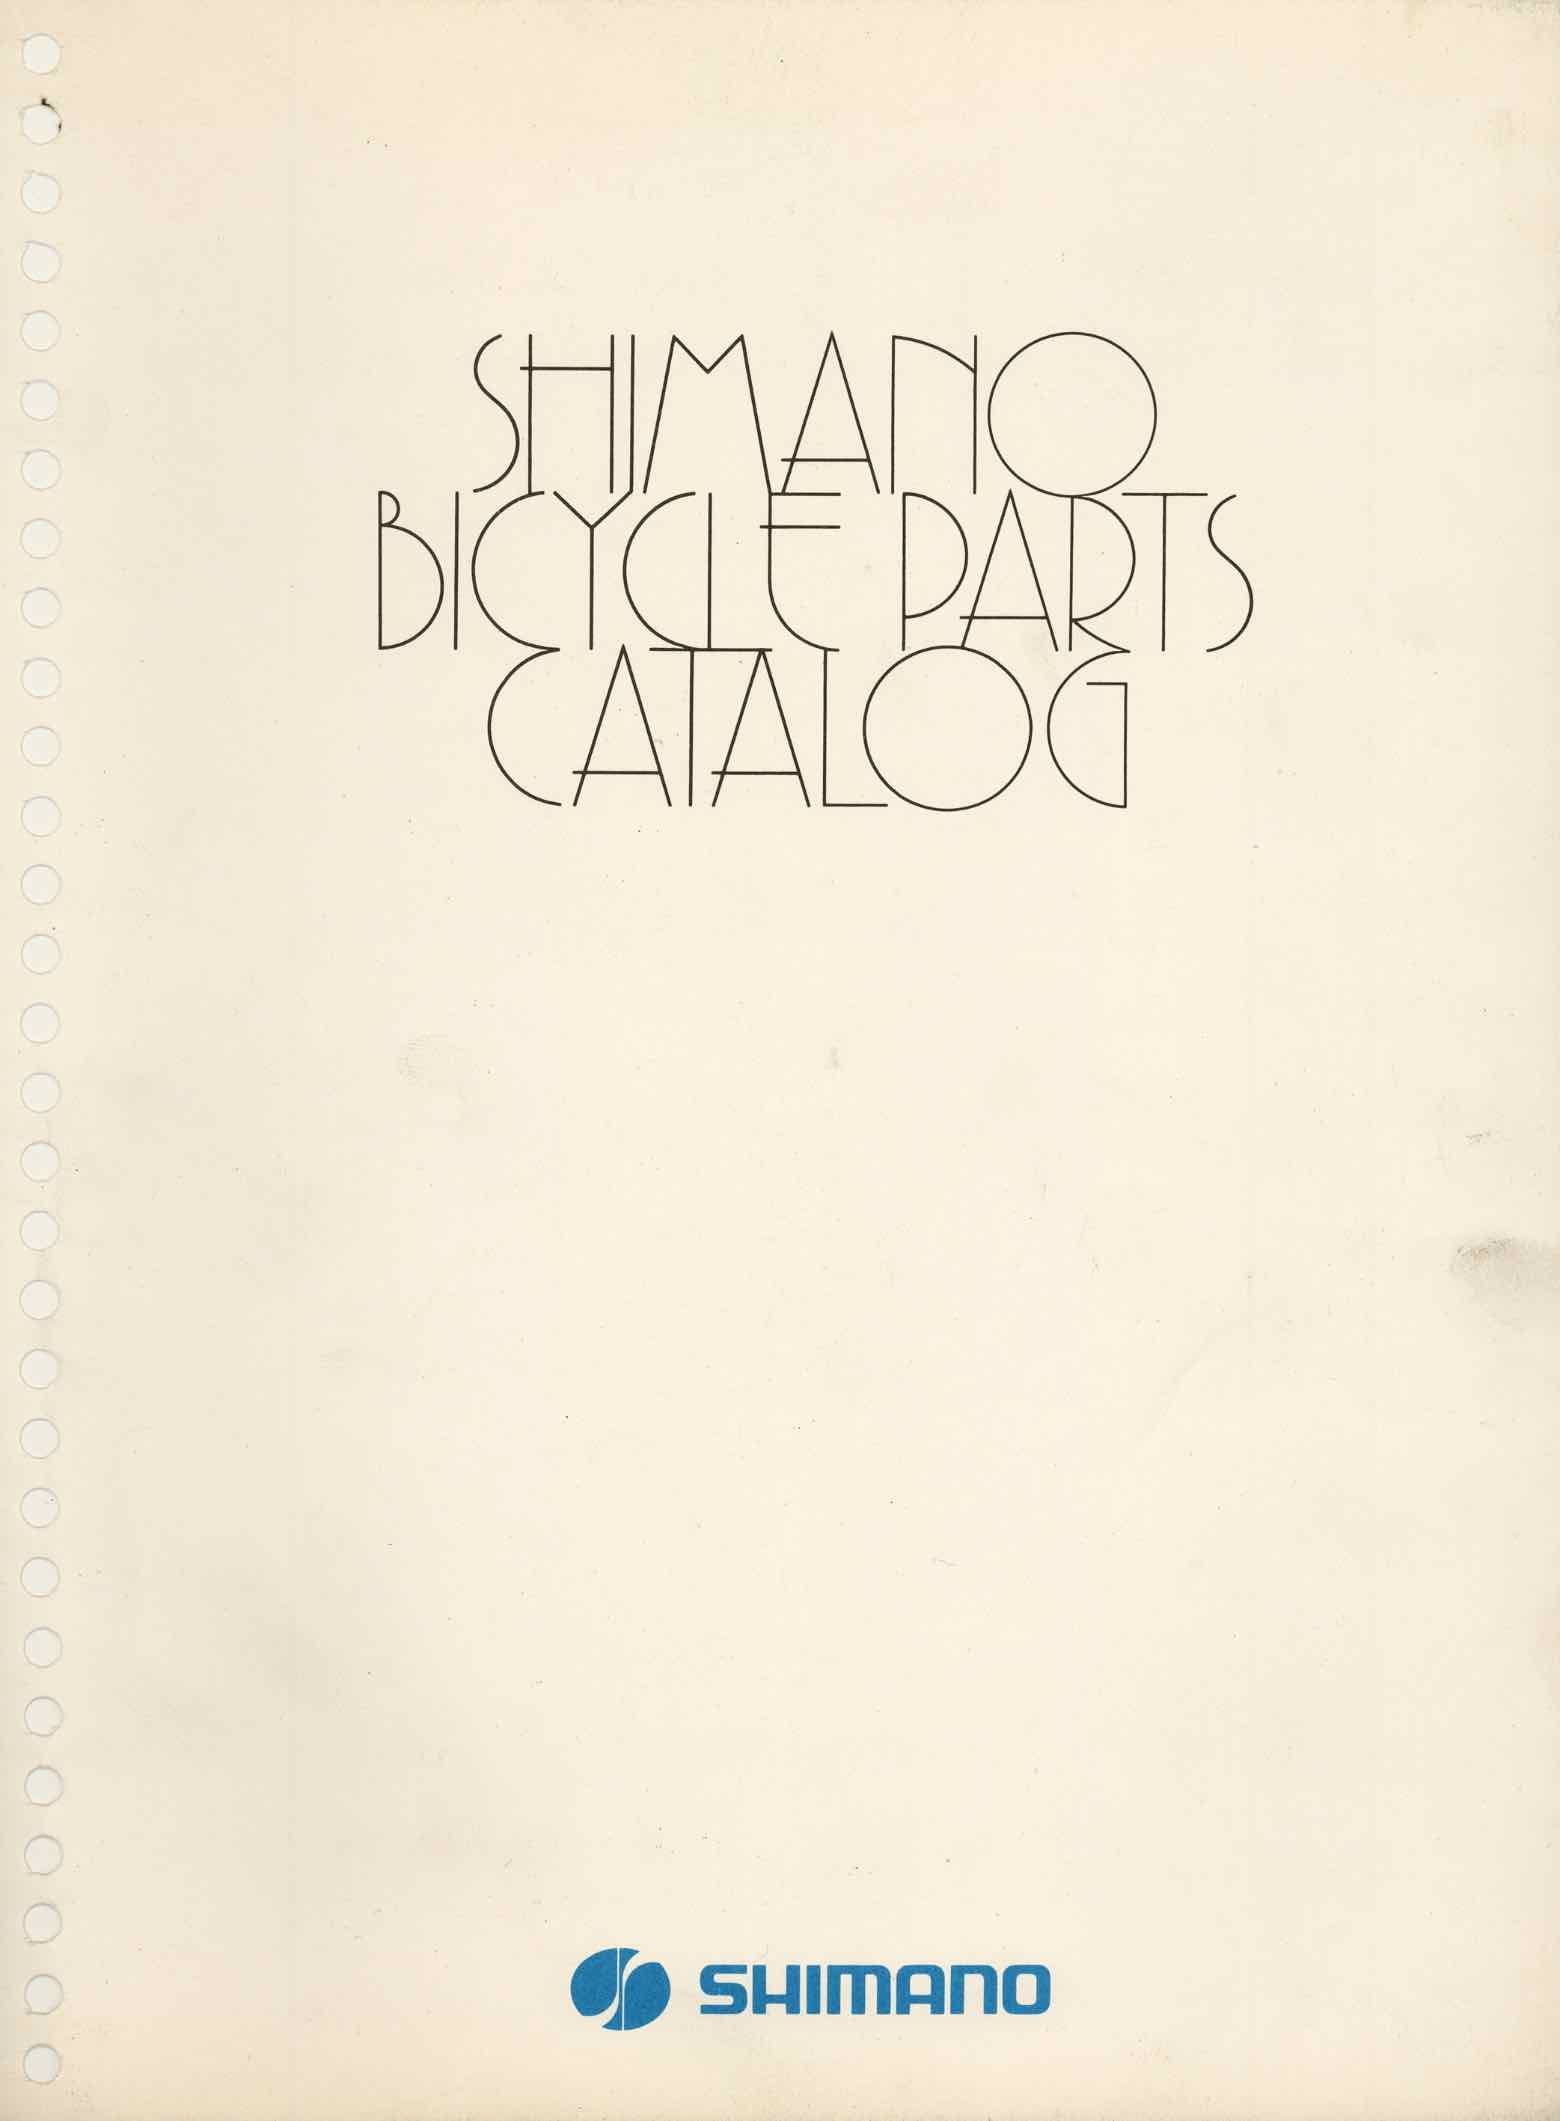 Shimano Bicycle Parts Catalog - 1973 front cover main image